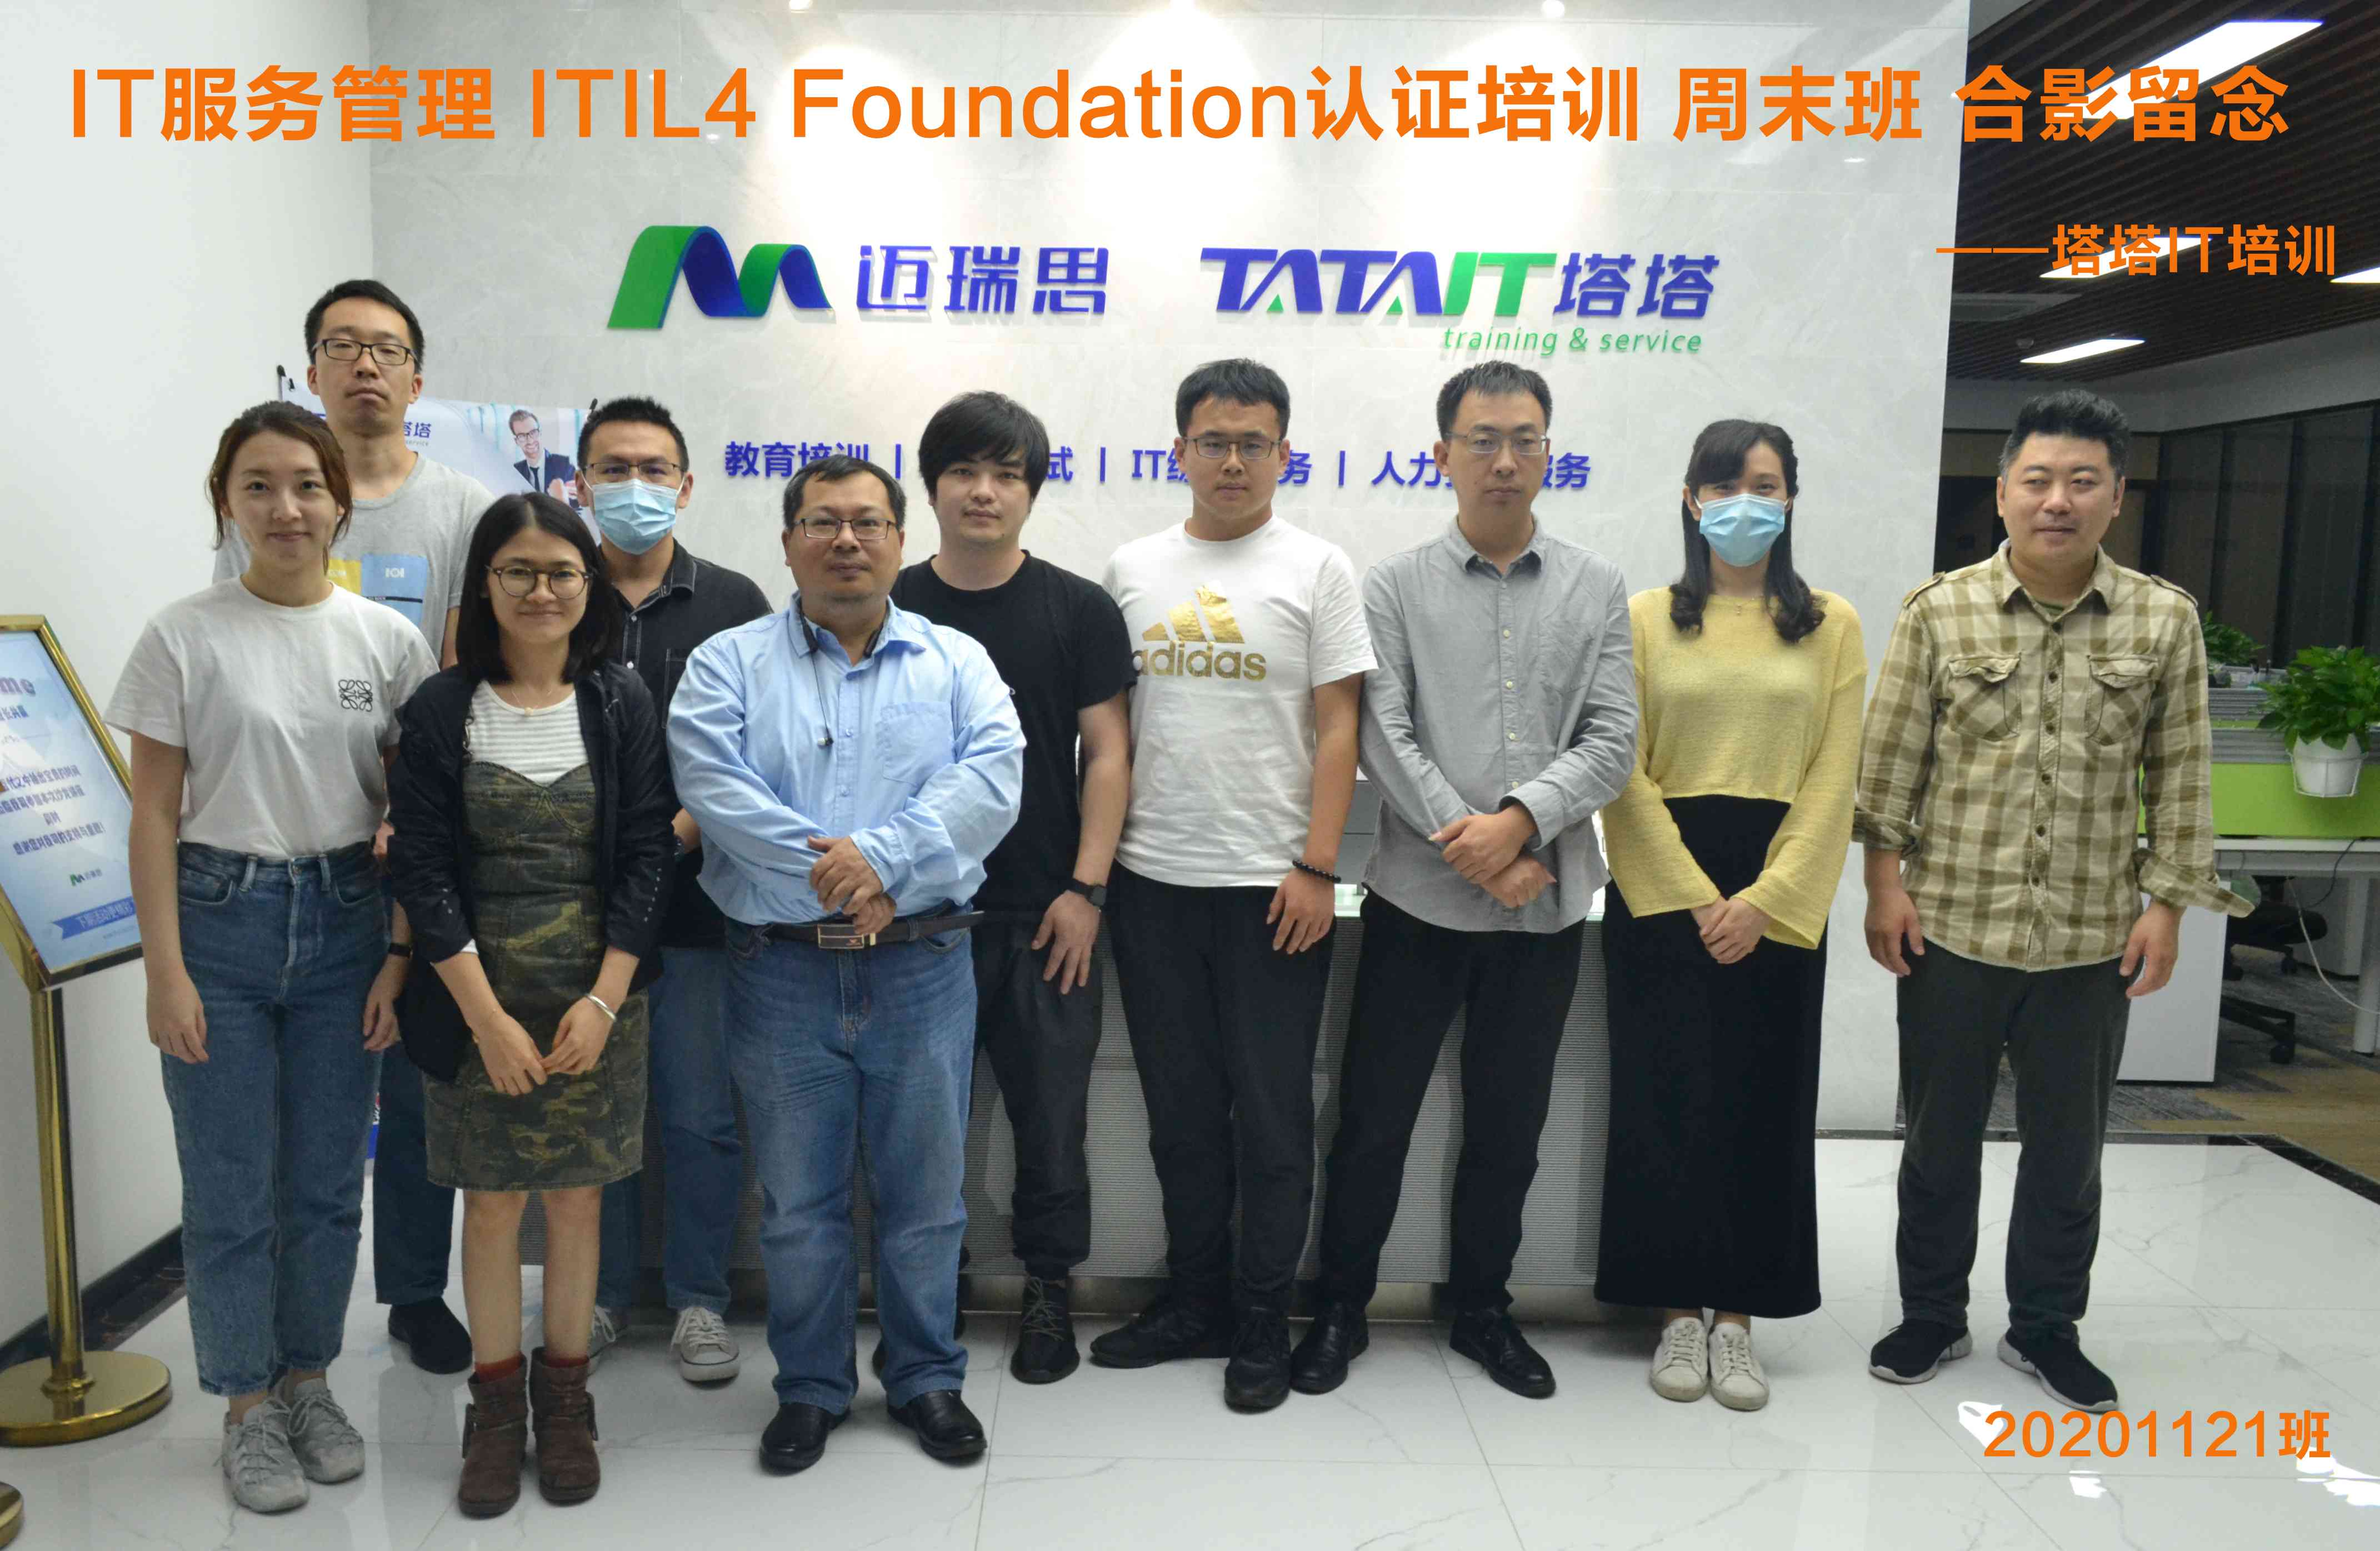 2020年11月ITIL4-Foundation认证培训周末班合影